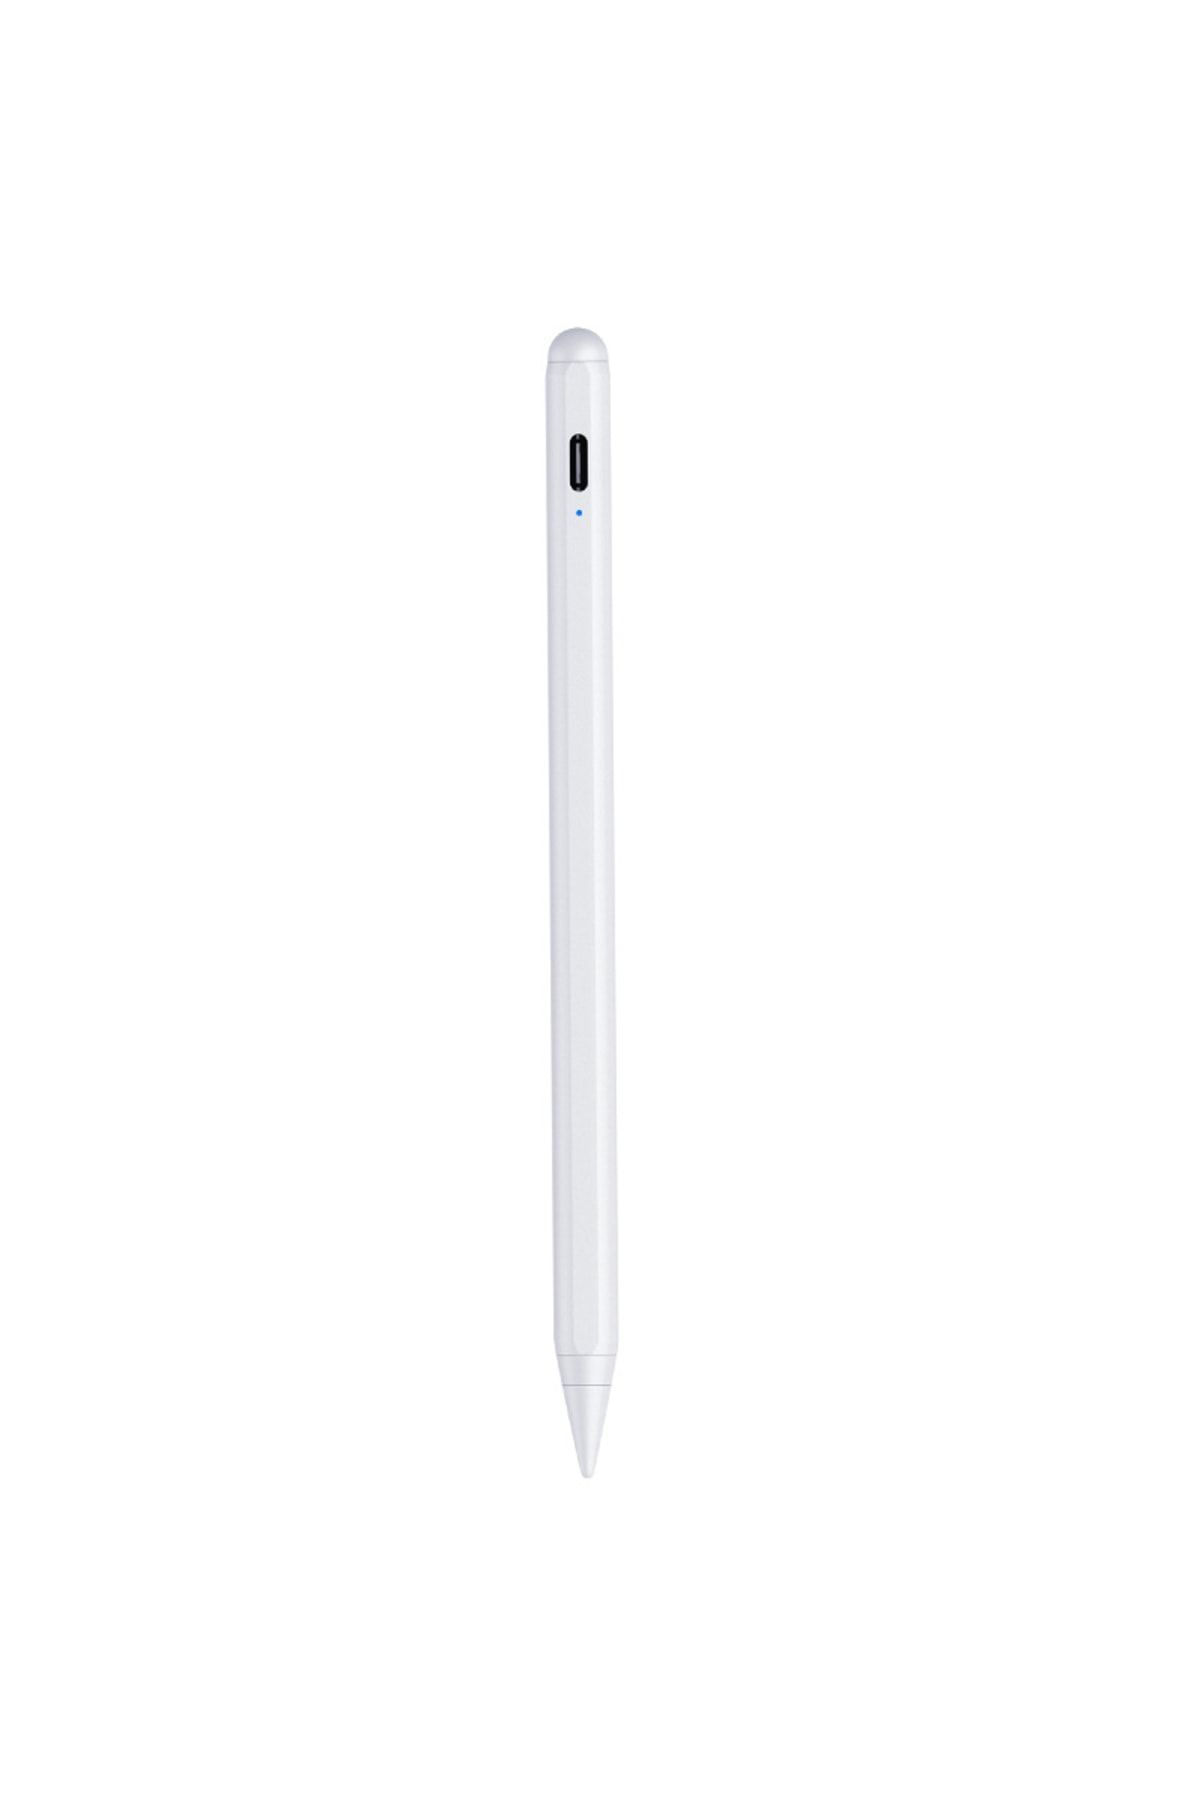 Benks 2nd Generation Stylus Pencil Palm Rejection Eğim Özellikli Dokunmatik Kalem Ipad 2018